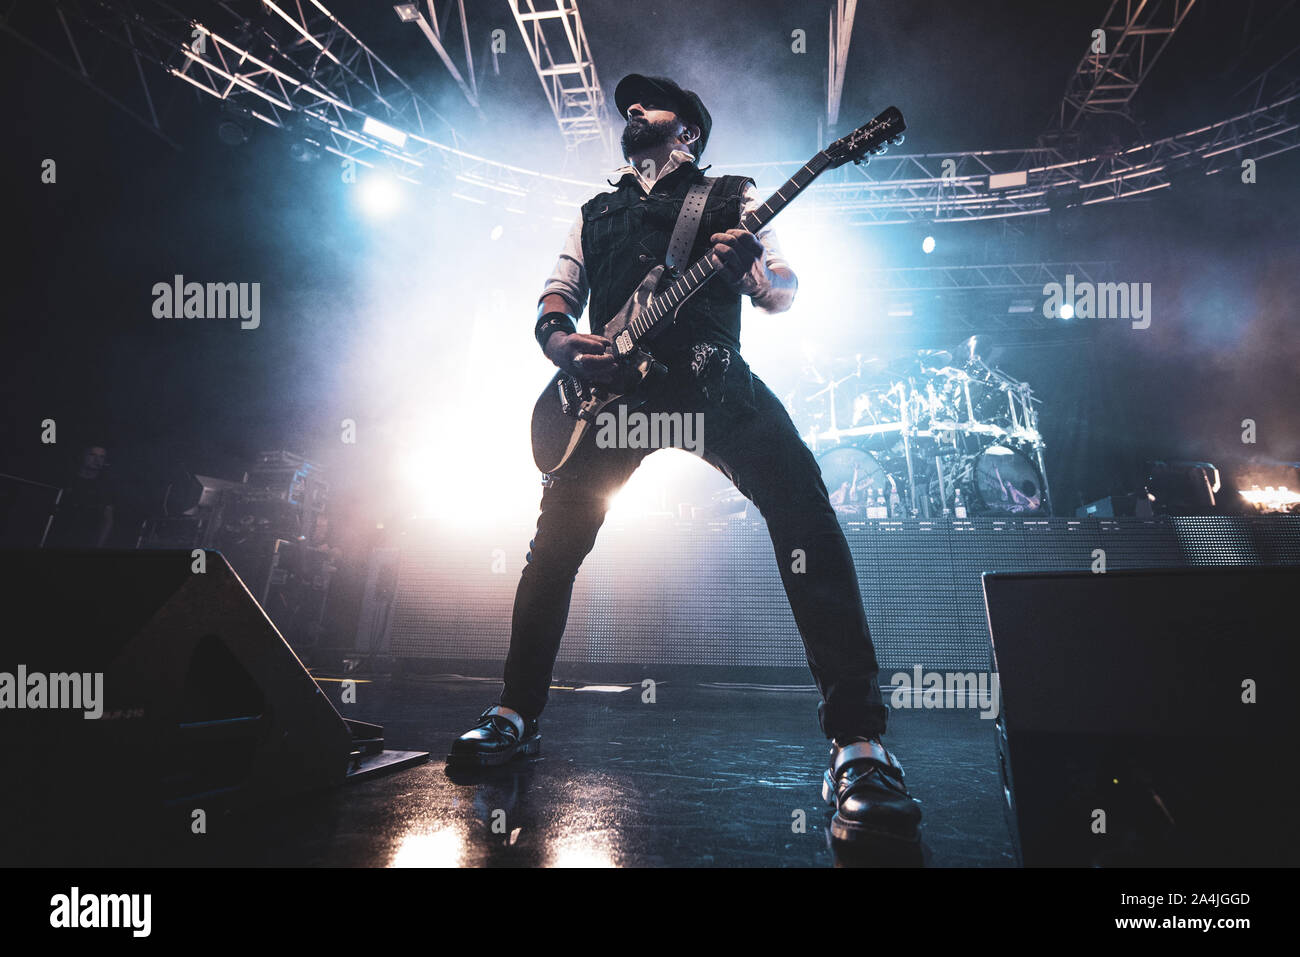 FABRIQUE, Milano, Italien - 2019/10/14: Rob Caggiano der dänischen Band Volbeat live auf der Bühne Fabrique, für das Zurückspulen Replay Reboud band Tour 2019 Stockfoto